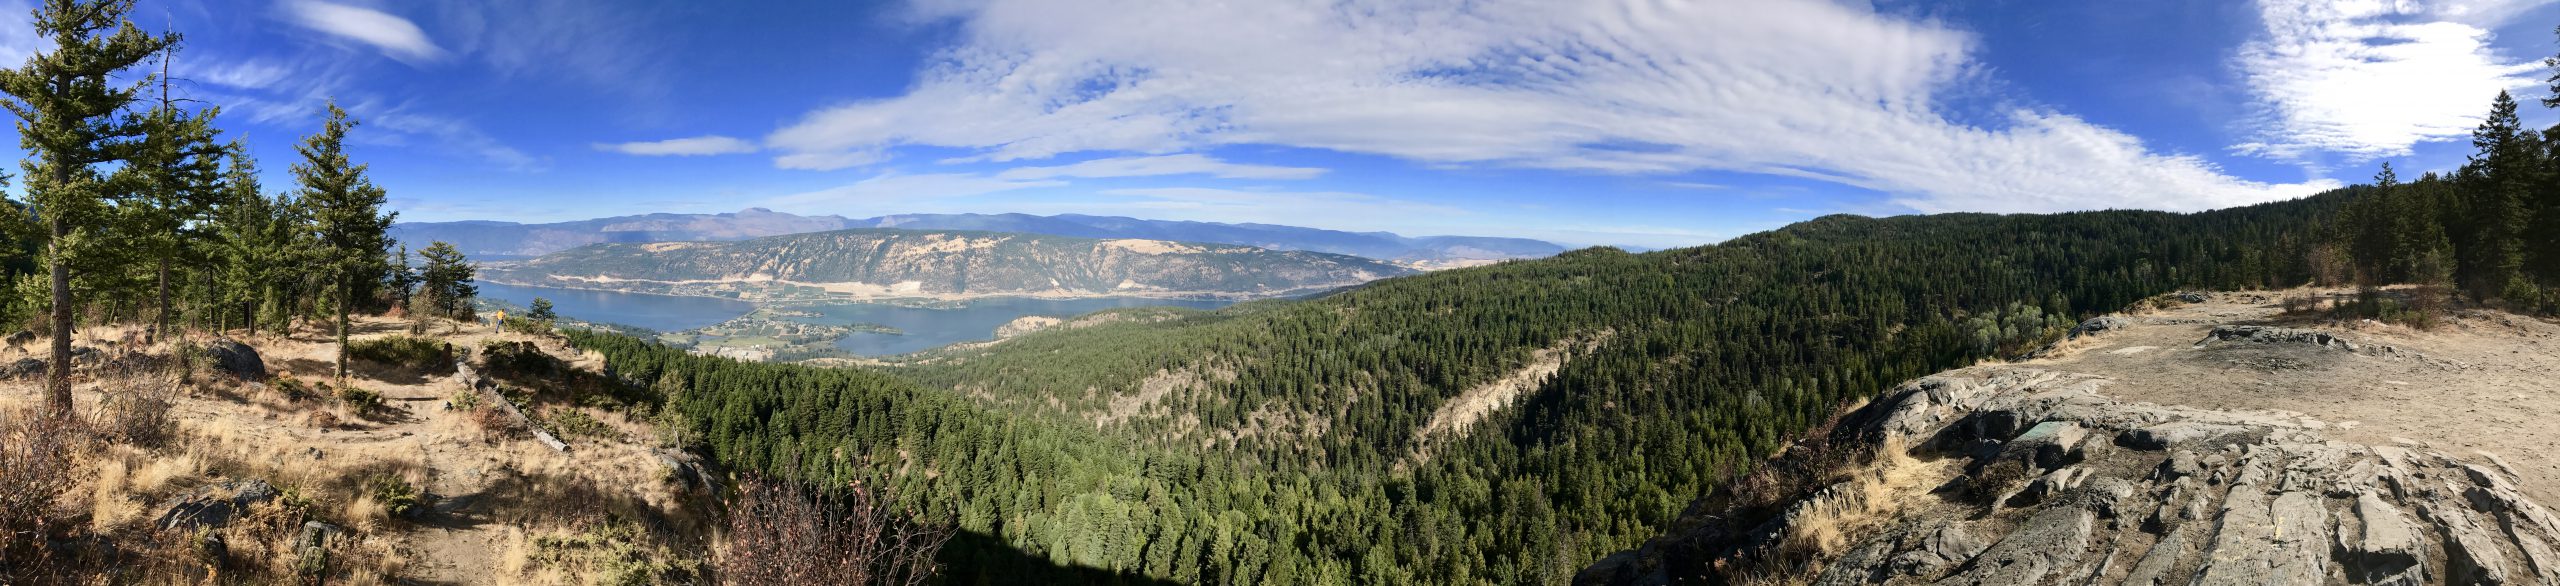 Panorama of Okanagan valley